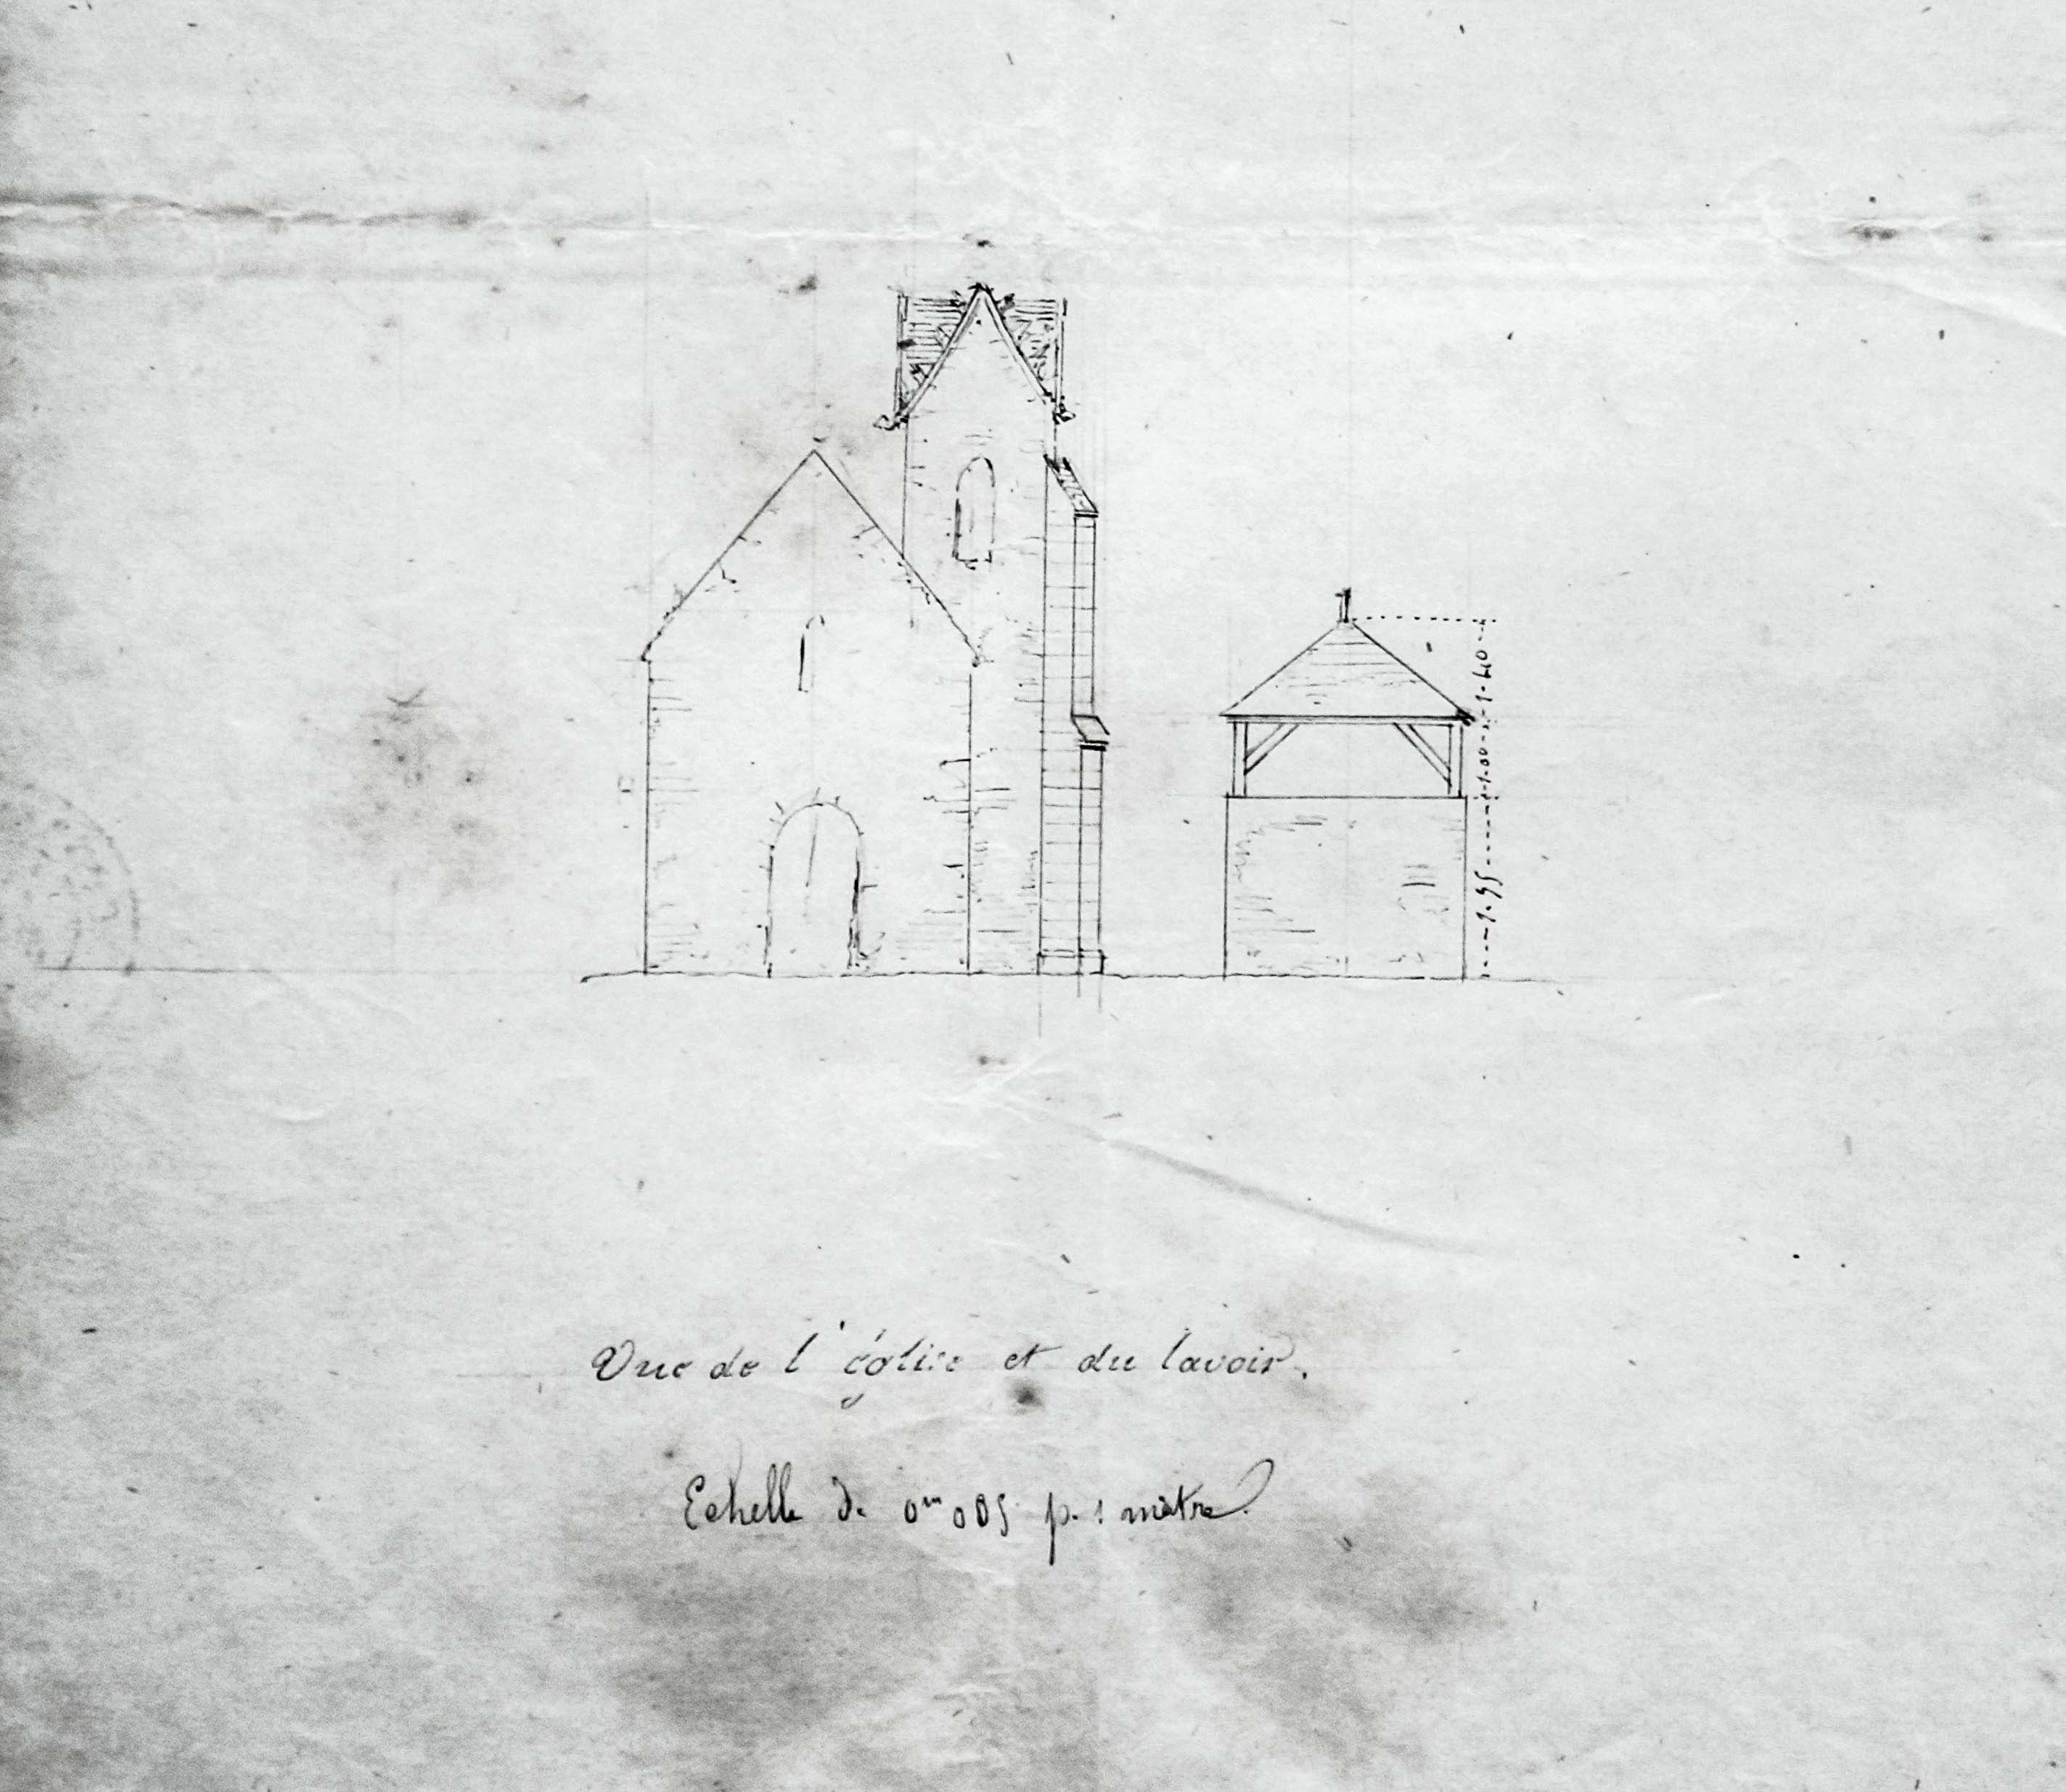 Un plan de l'ancien emplacement du lavoir par rapport à l'église, vers 1860.